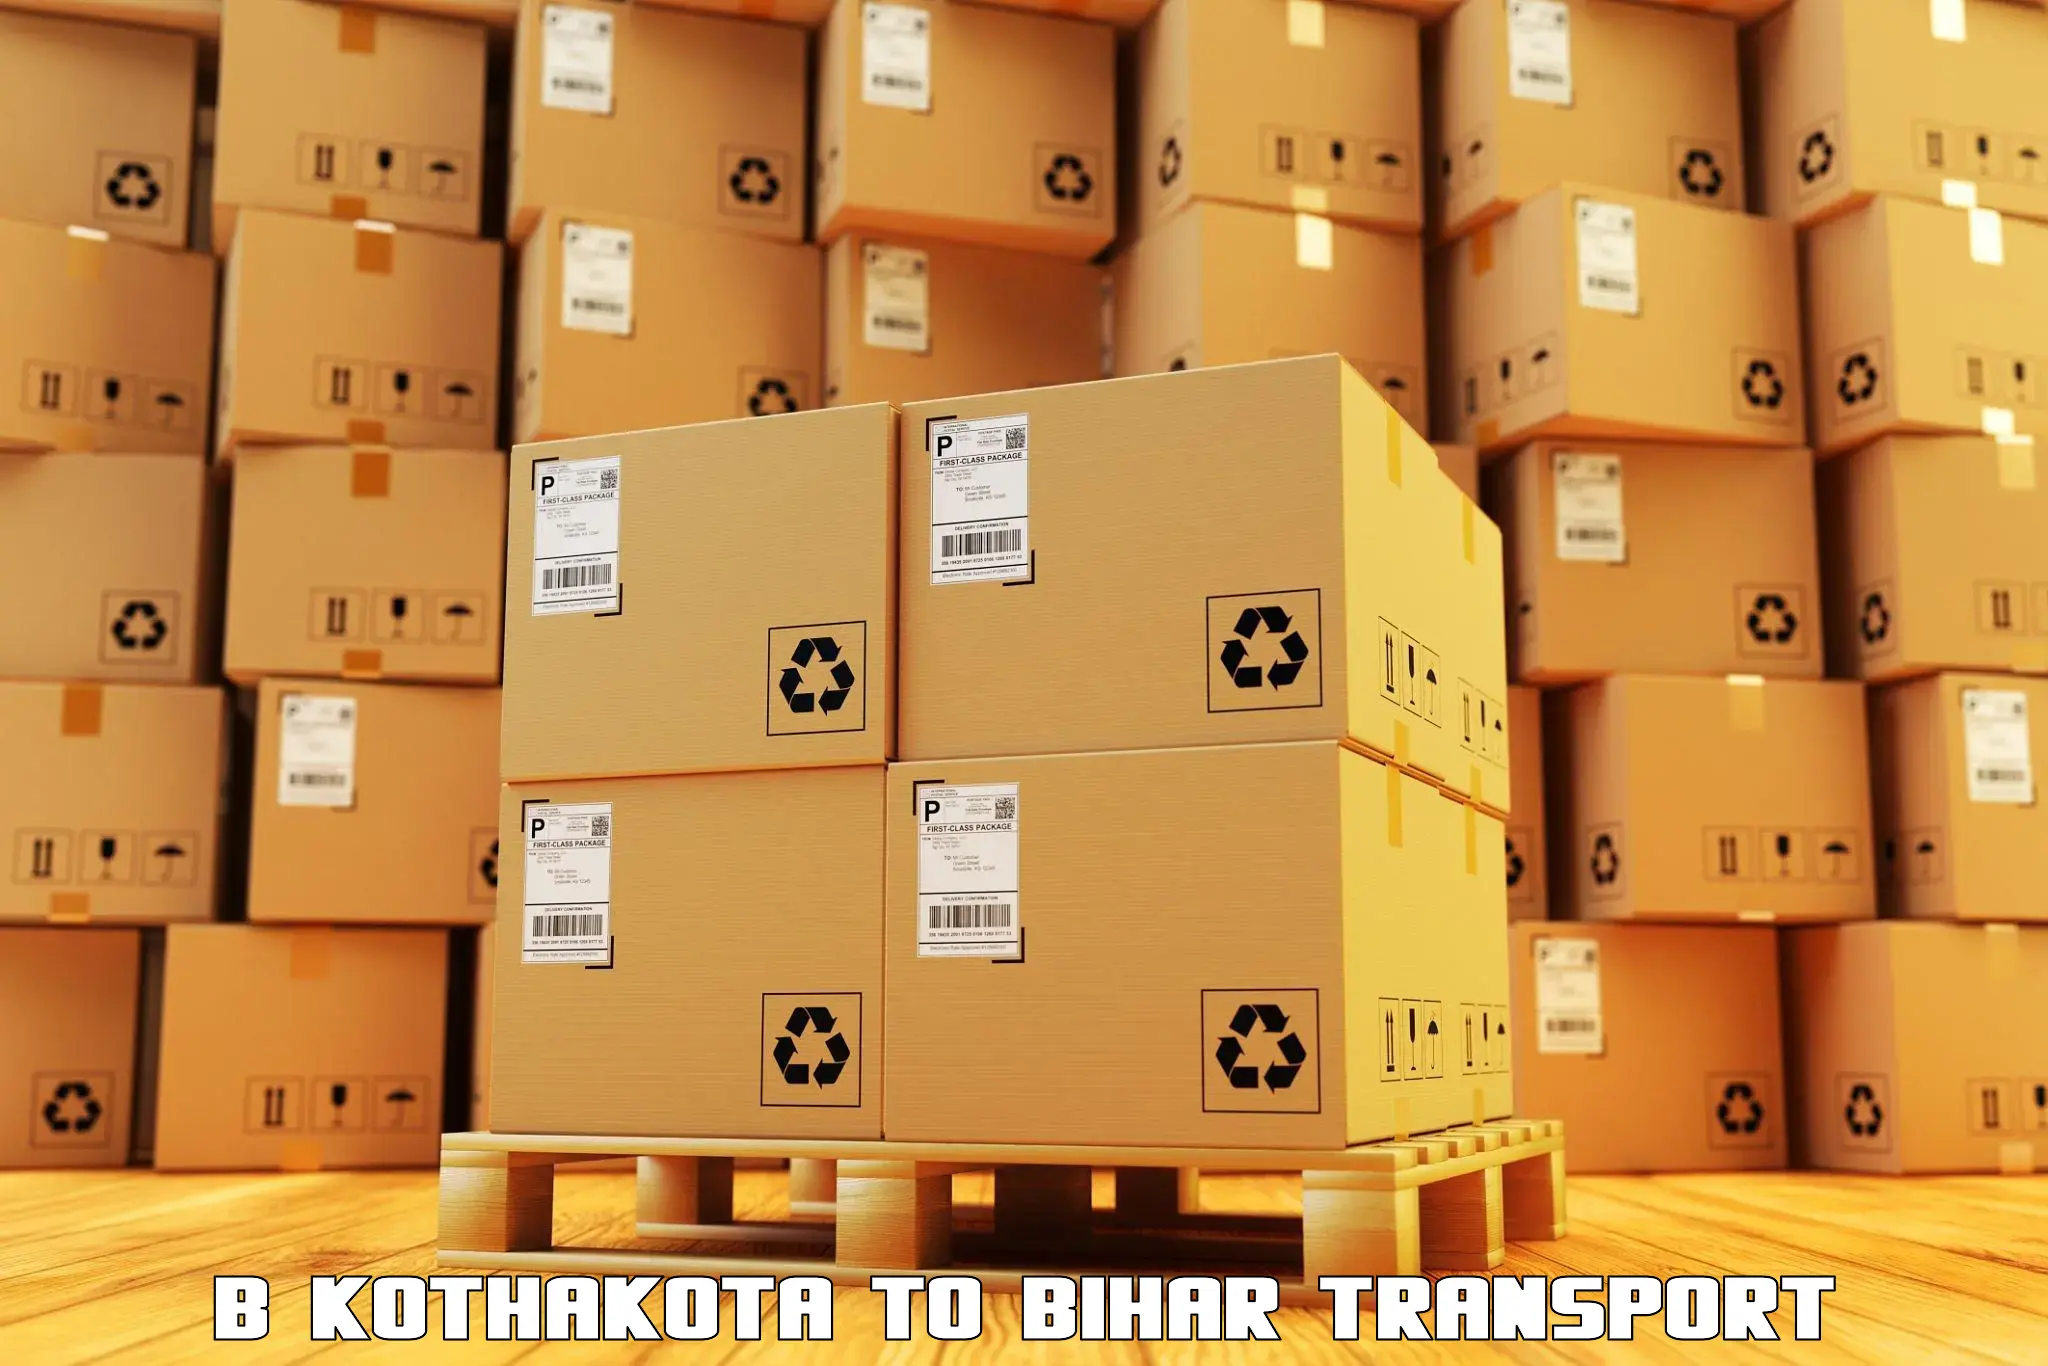 Part load transport service in India B Kothakota to Piro